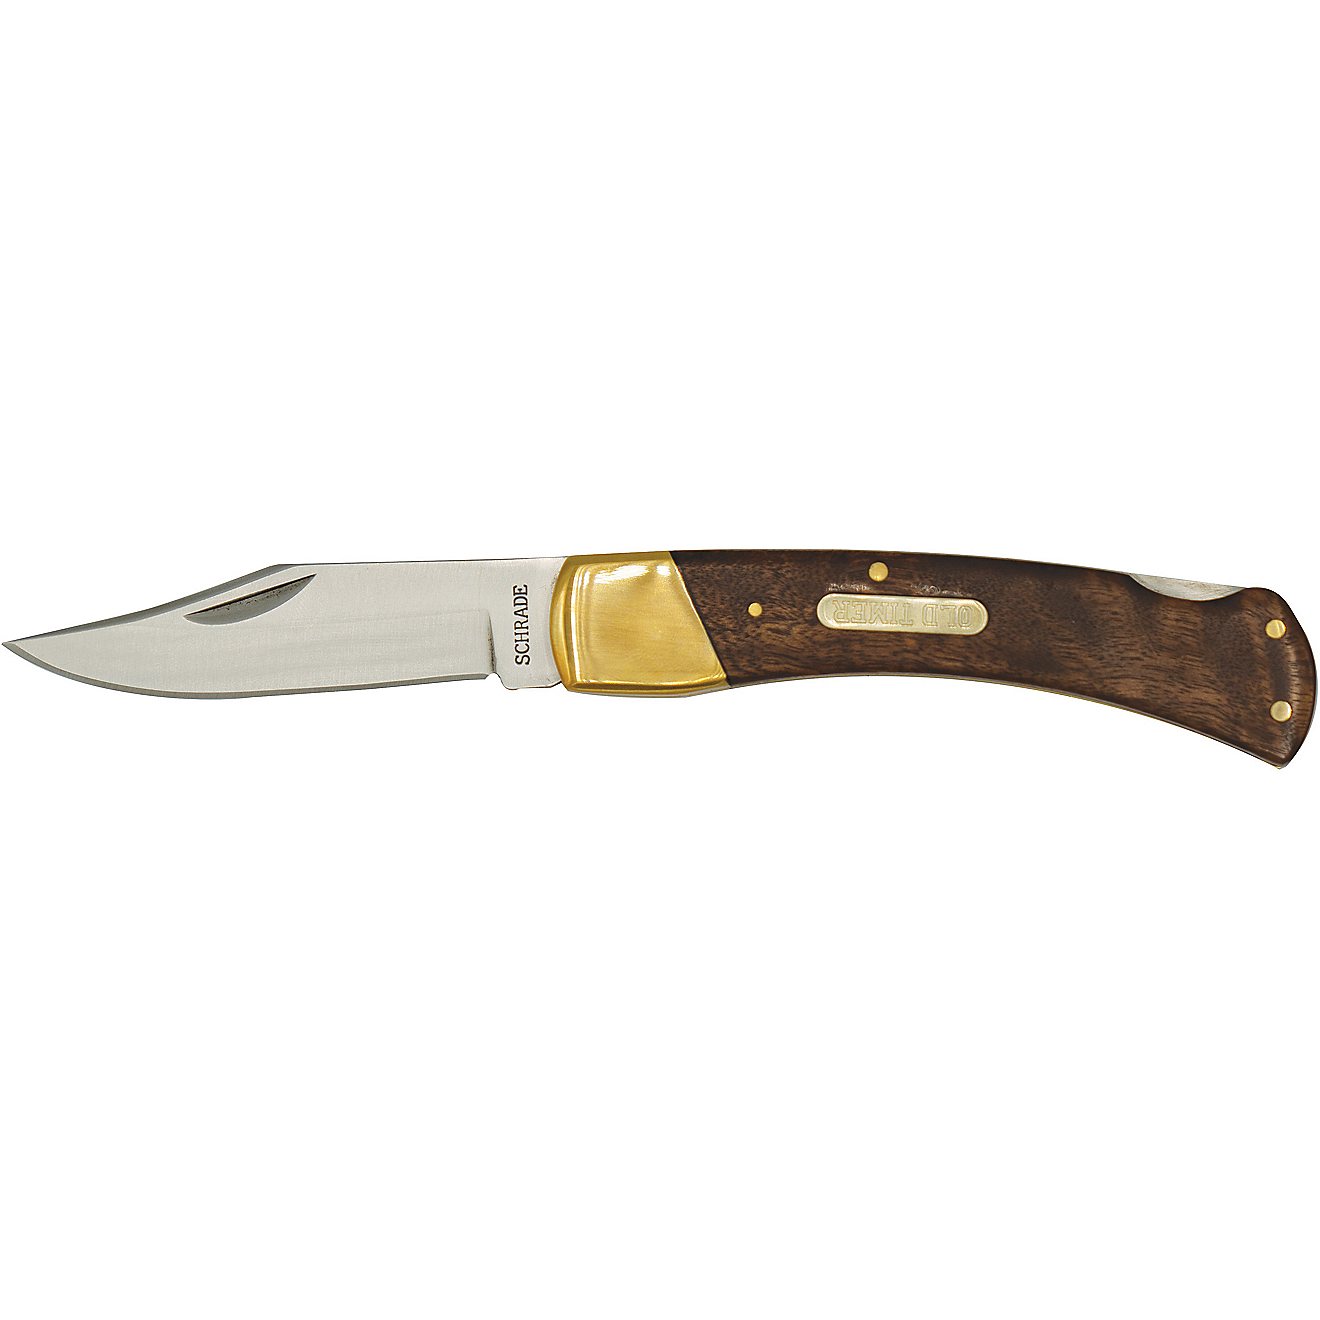 Old Timer Golden Bear Lockback Folding Knife                                                                                     - view number 2